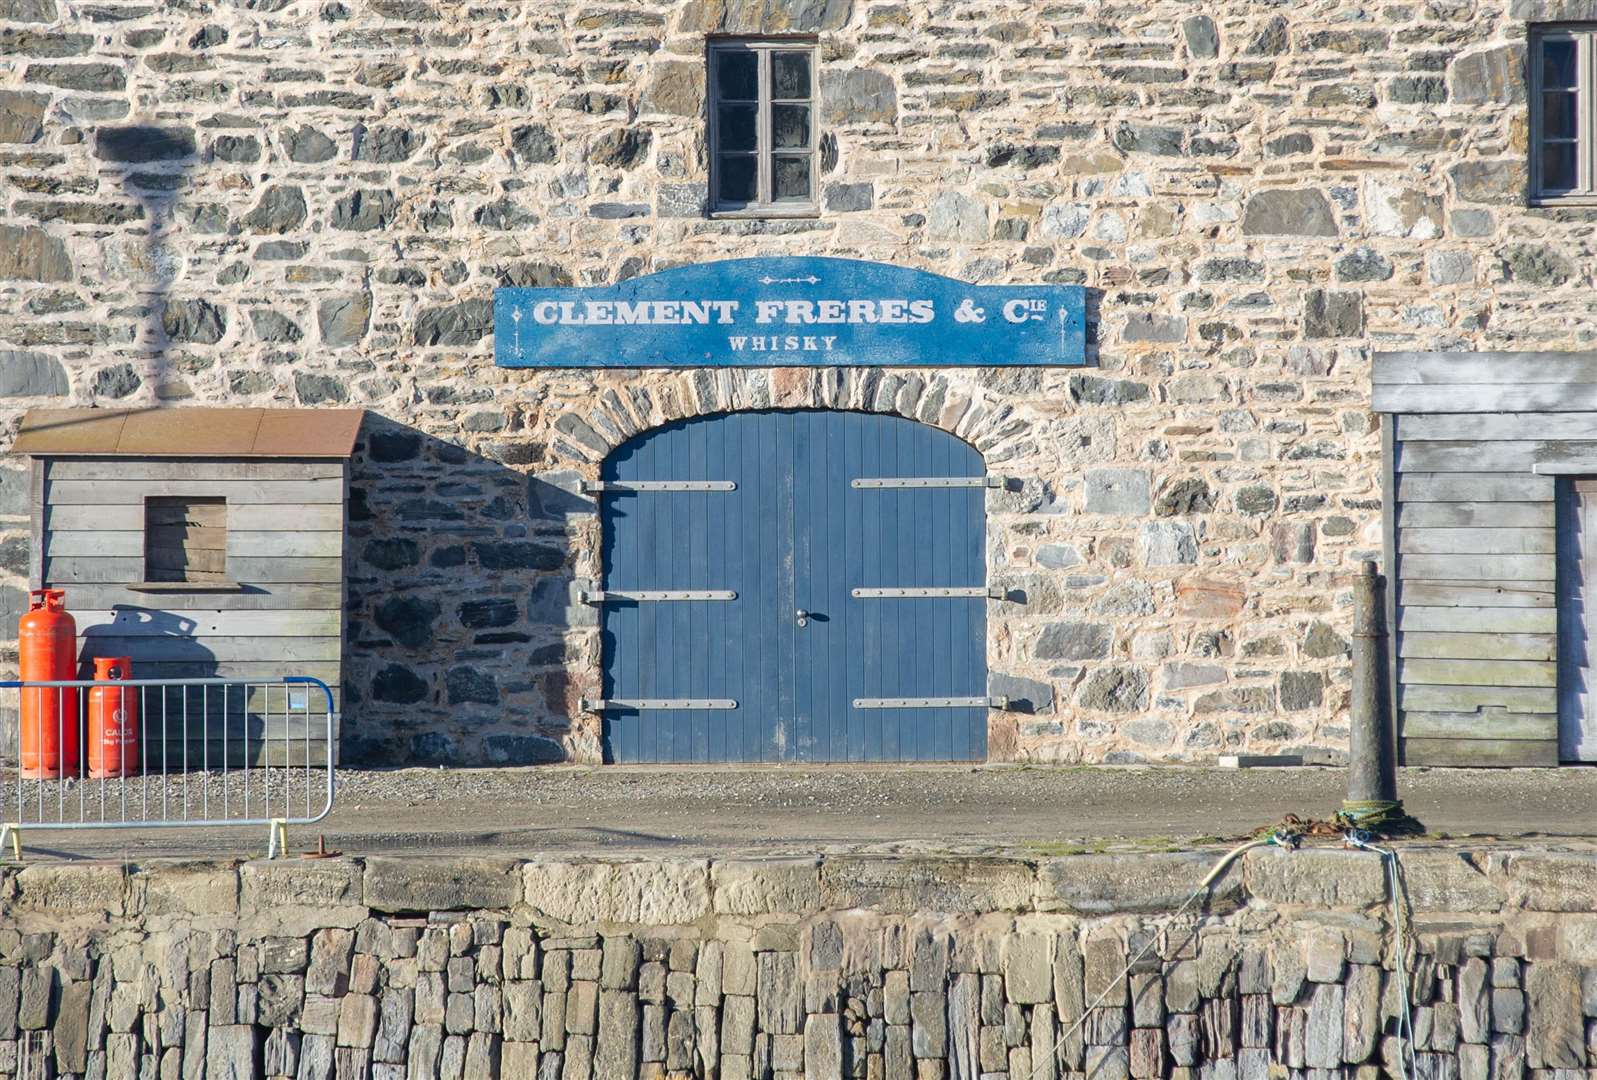 Un signe français, "Clement Freres & Cie - Whisky", a été placé sur un bâtiment faisant face au port et un auvent en bois ajouté à l'extérieur.  Image: Daniel Forsyth.